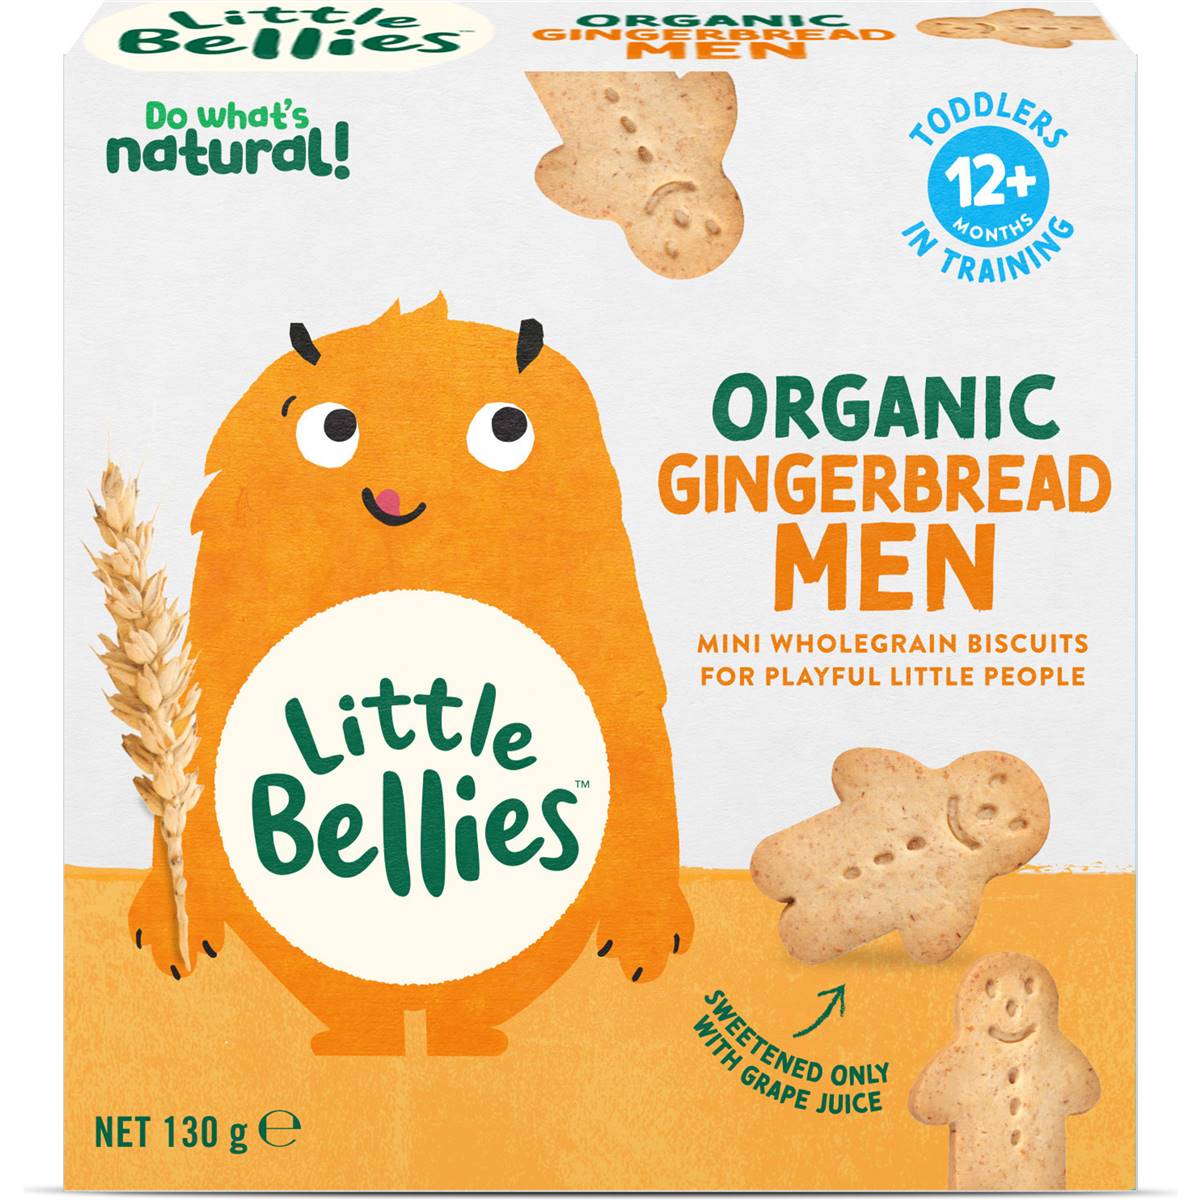 Calories in Little Bellies Gingerbread Men